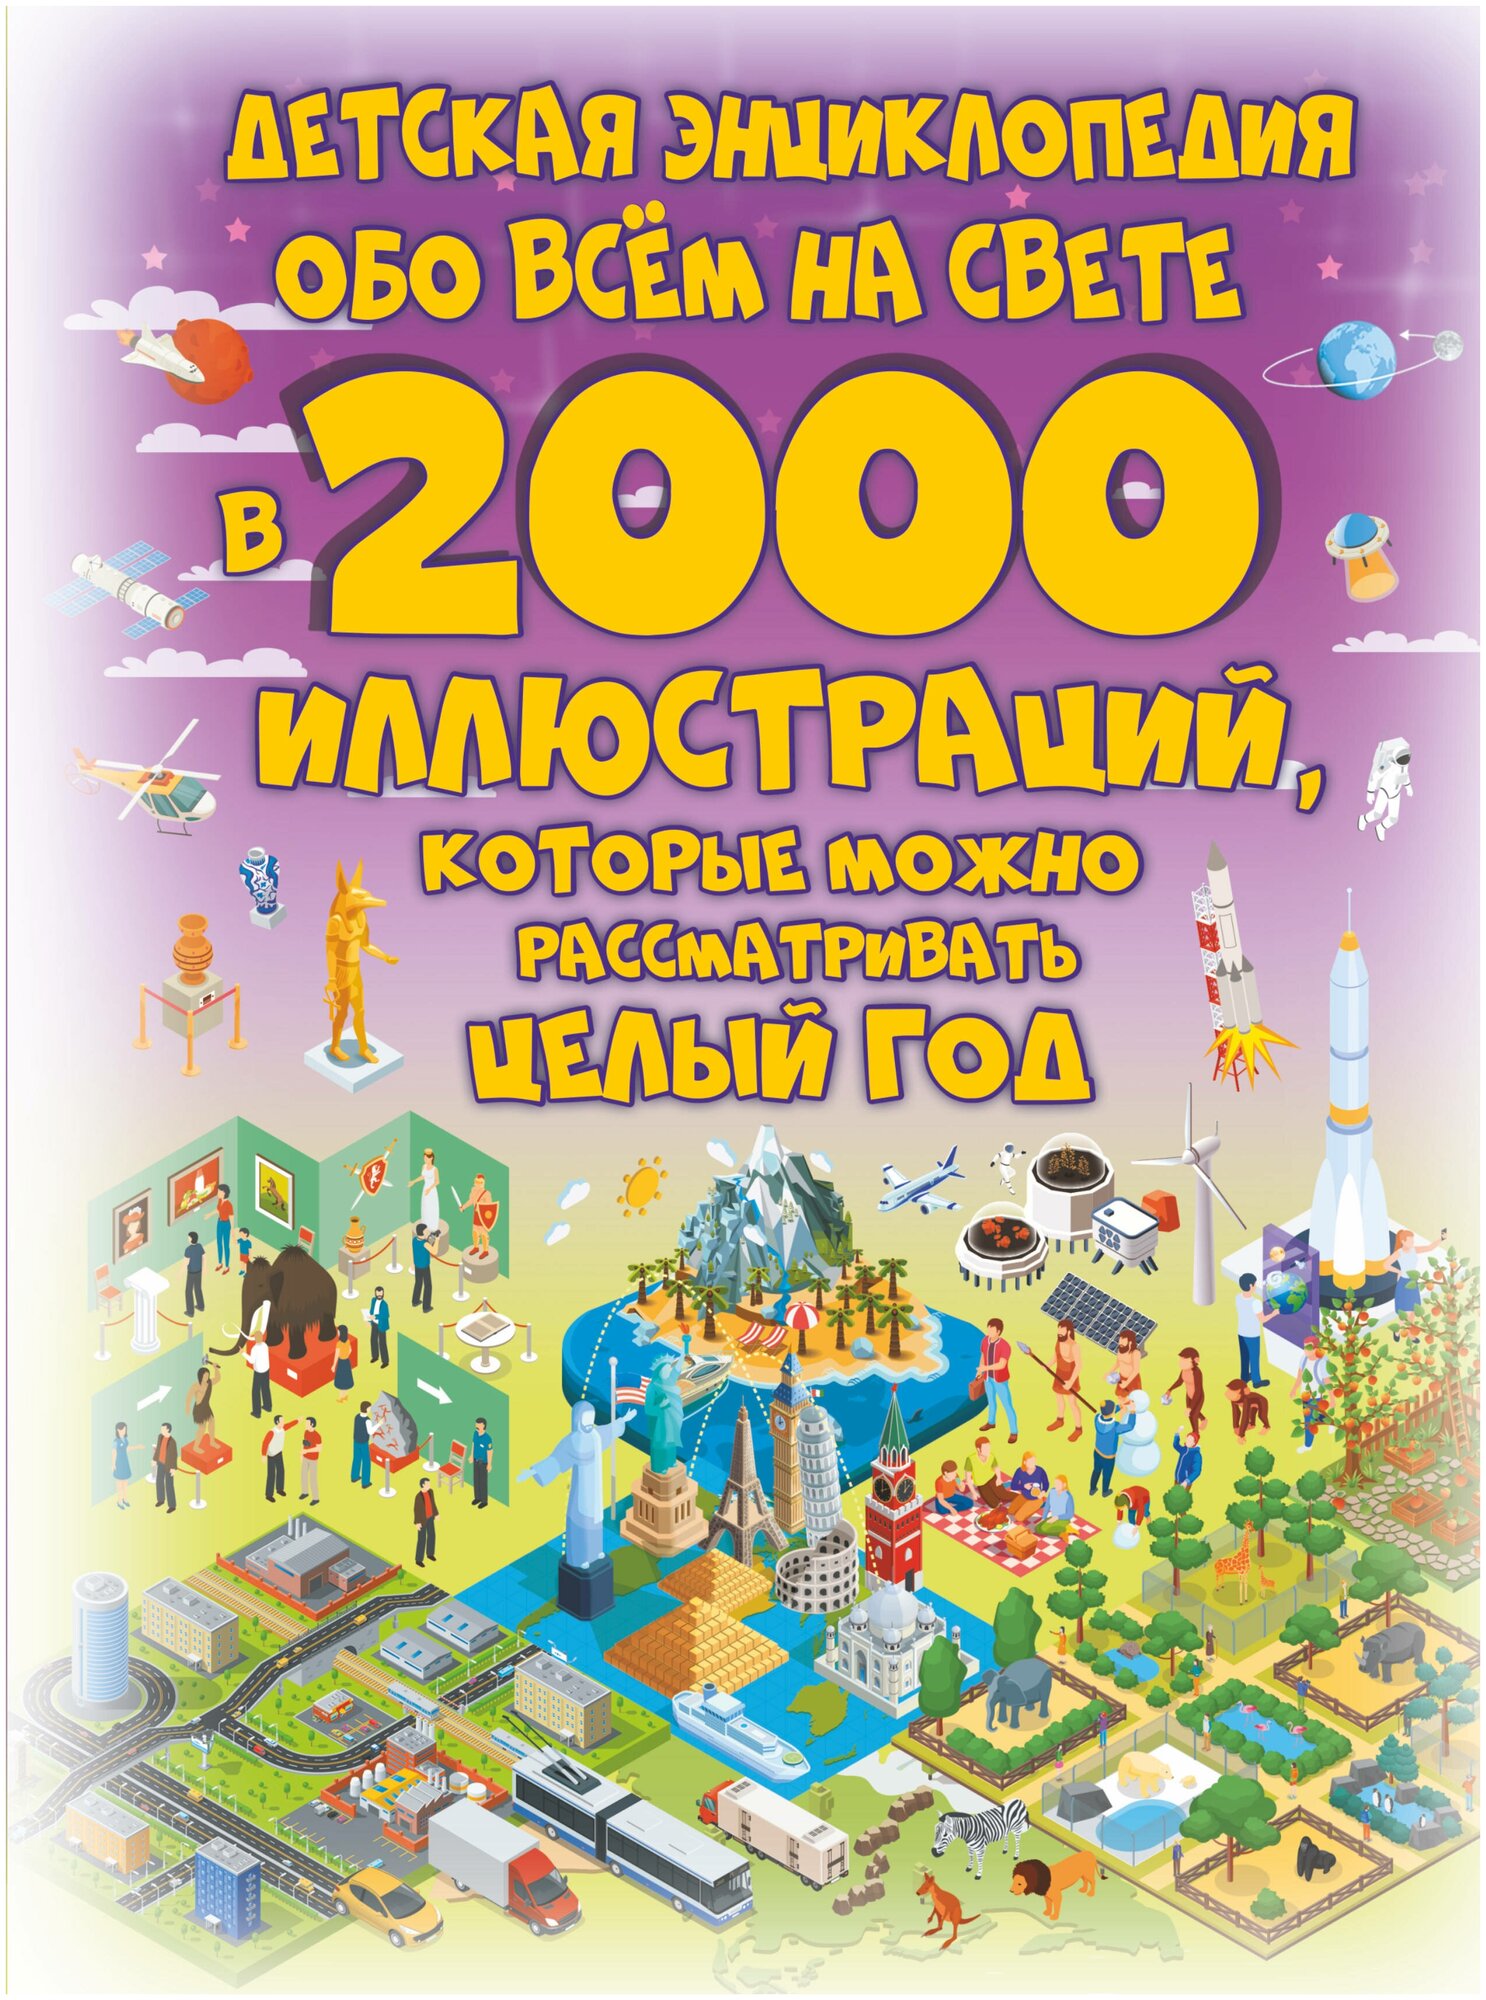 Детская энциклопедия обо всем на свете в 2000 иллюстраций, которые можно рассматривать целый год